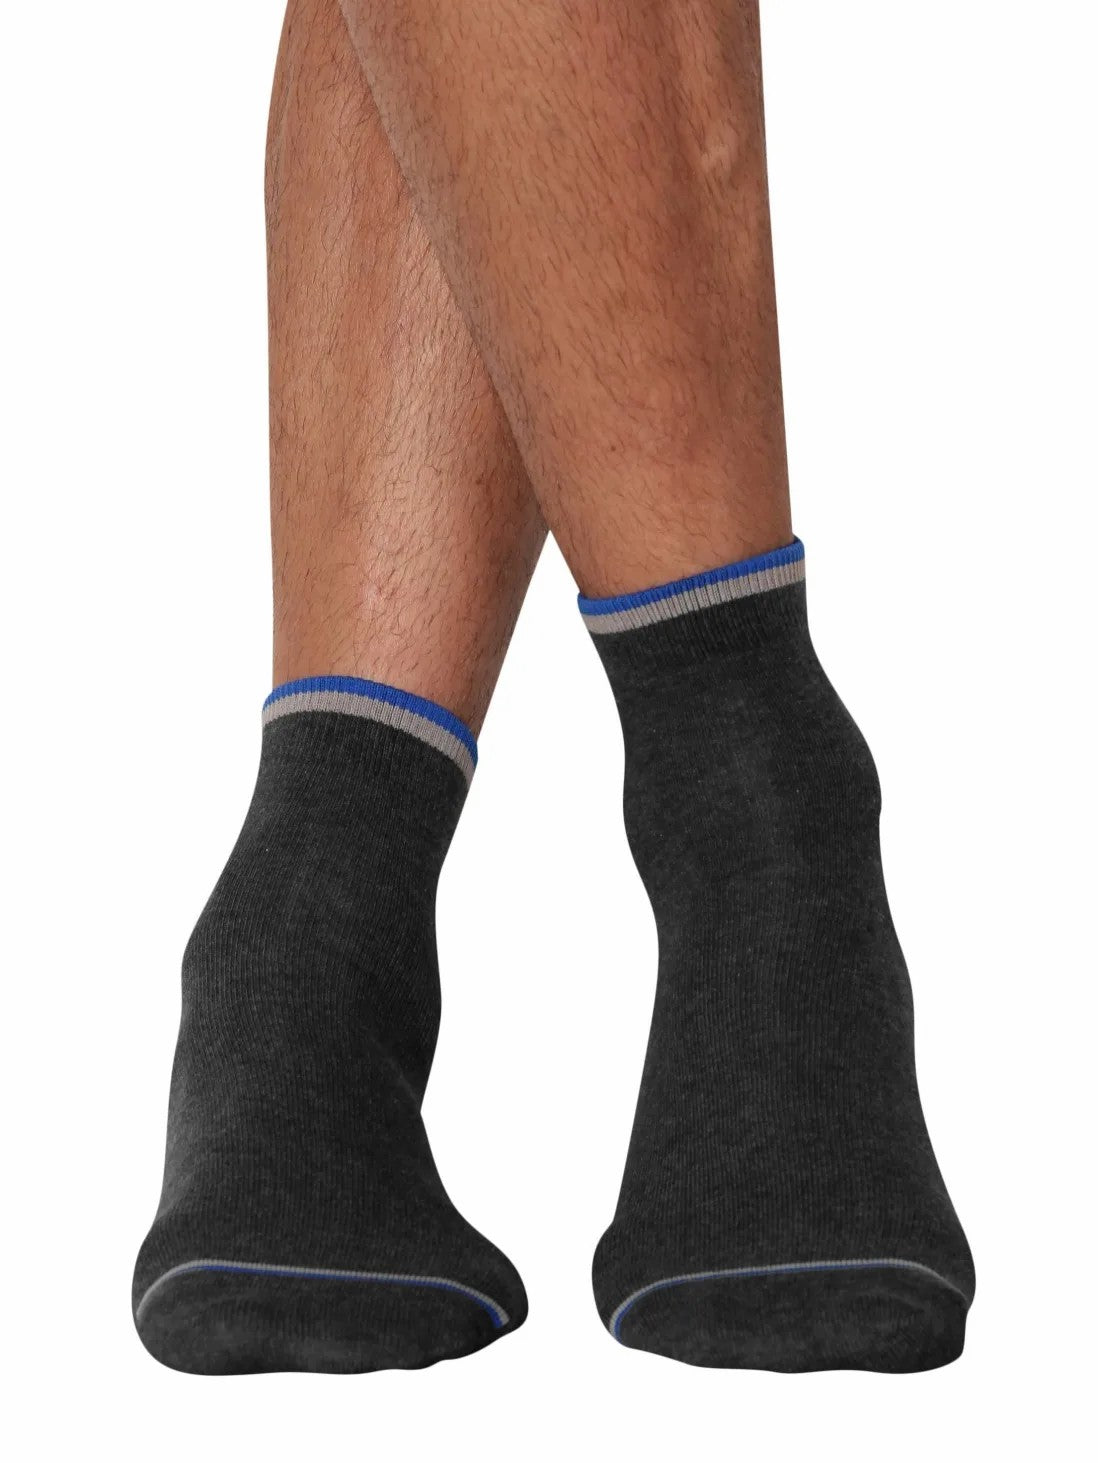 Men's Assorted Ankle Socks